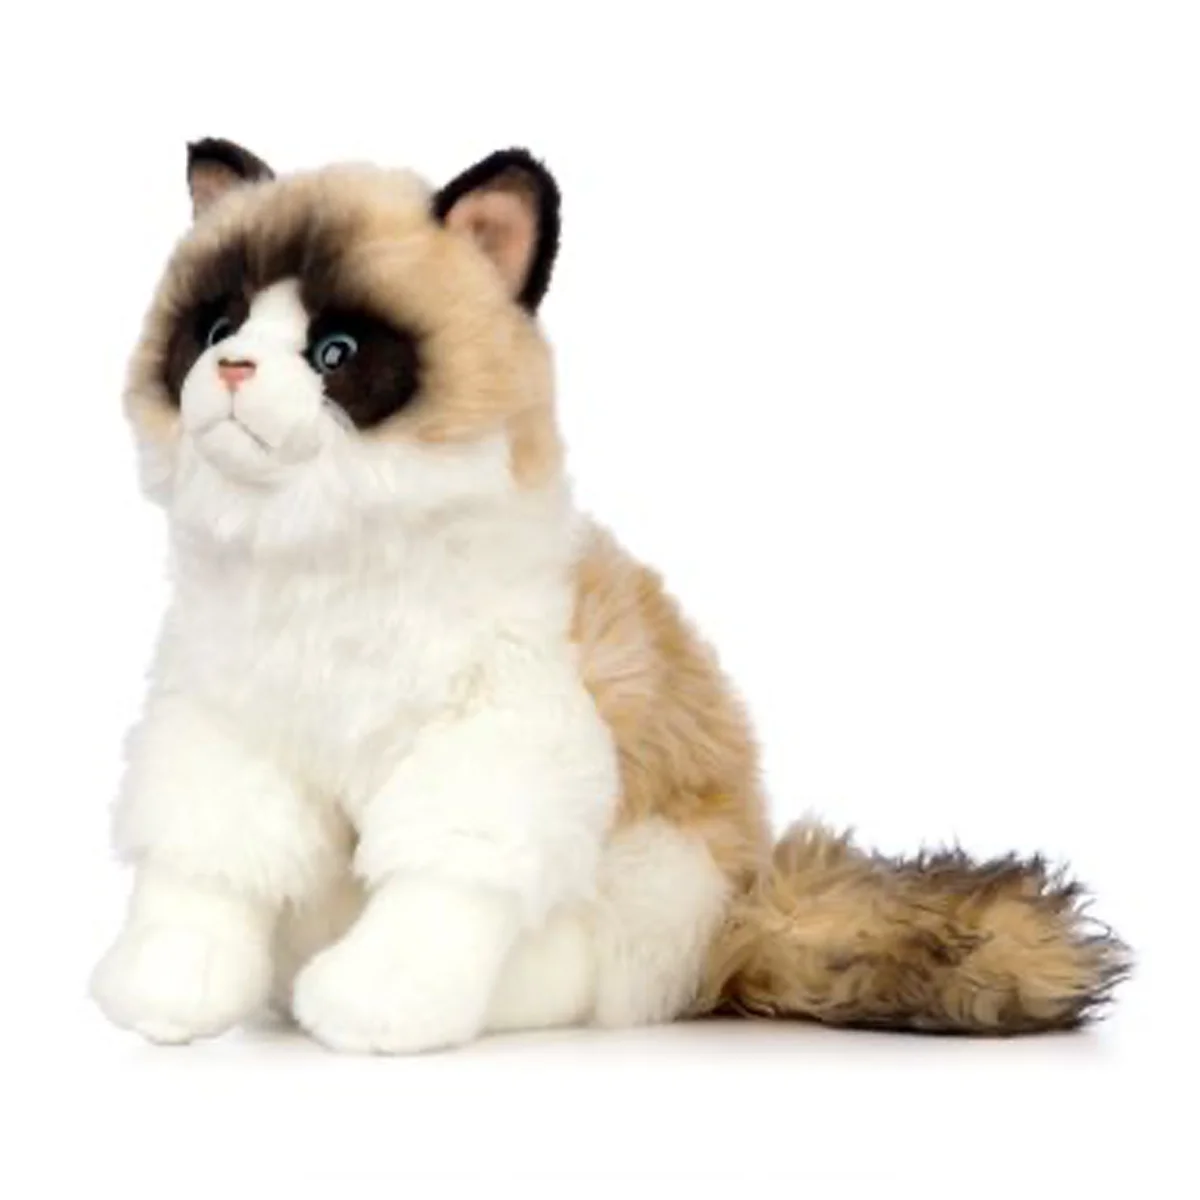 Nature ragdoll kat bamse - Køb online til kun kr. 399.95